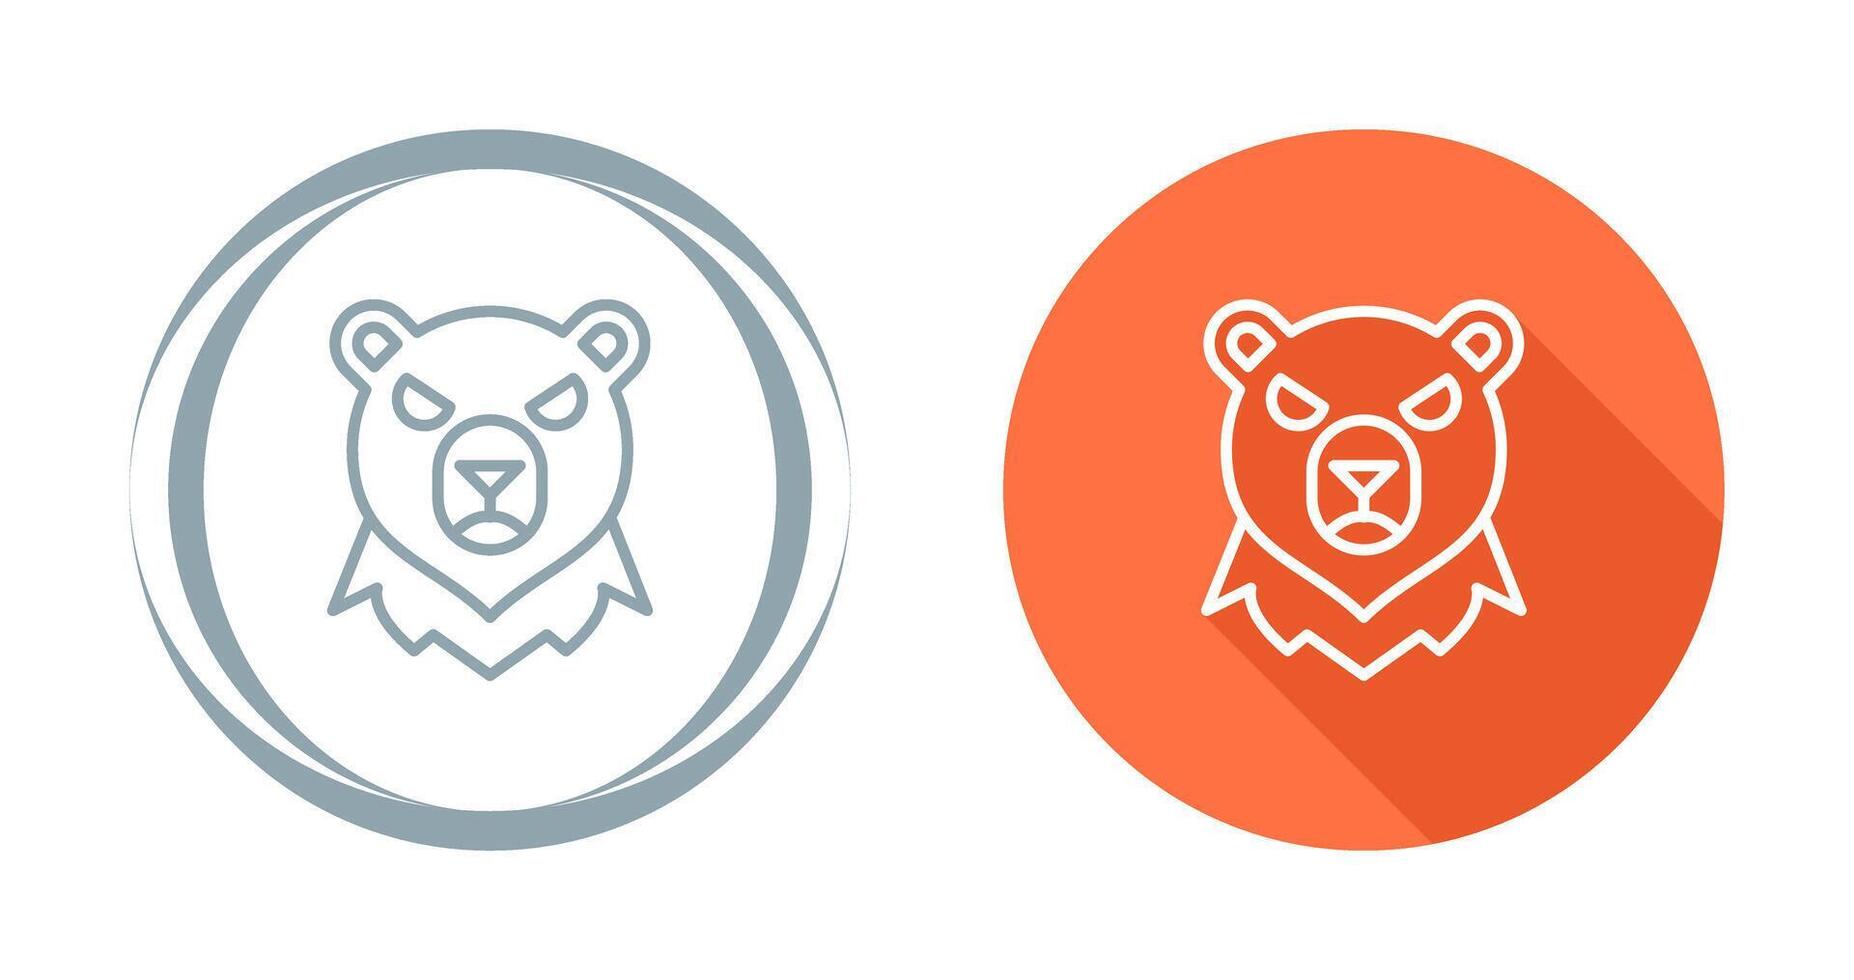 Bear Vector Icon